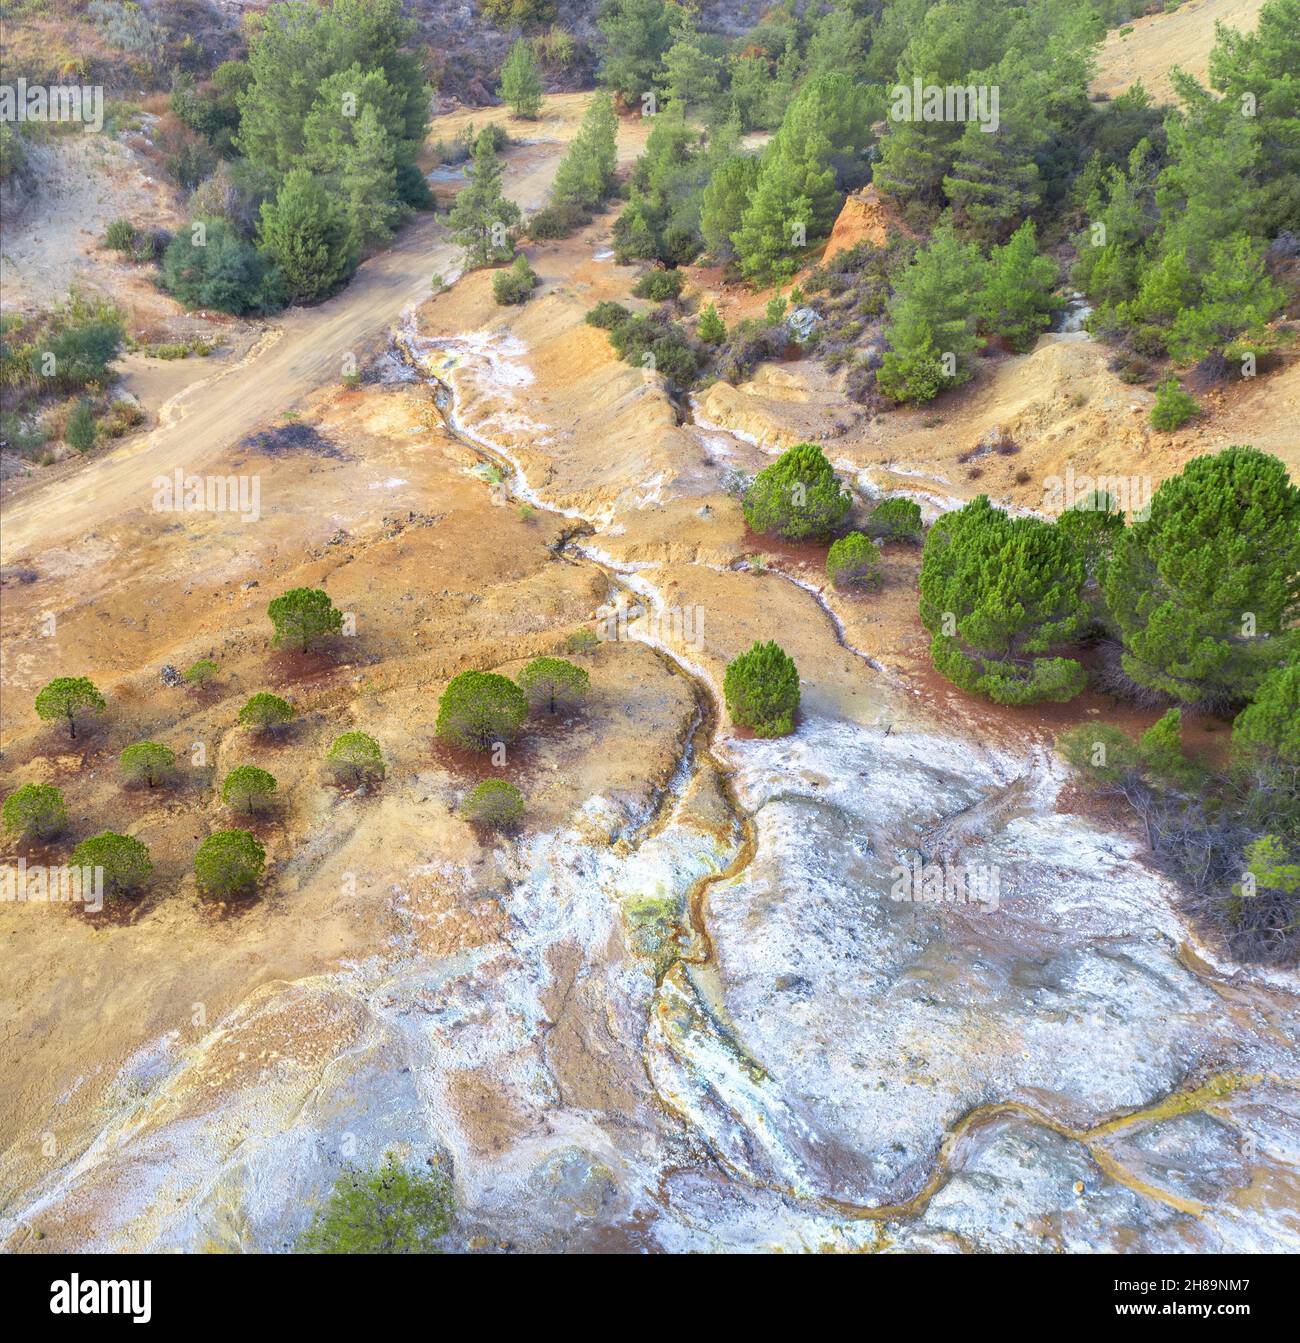 Dommages environnementaux sur le site abandonné de la mine de pyrite à Chypre, vue aérienne Banque D'Images